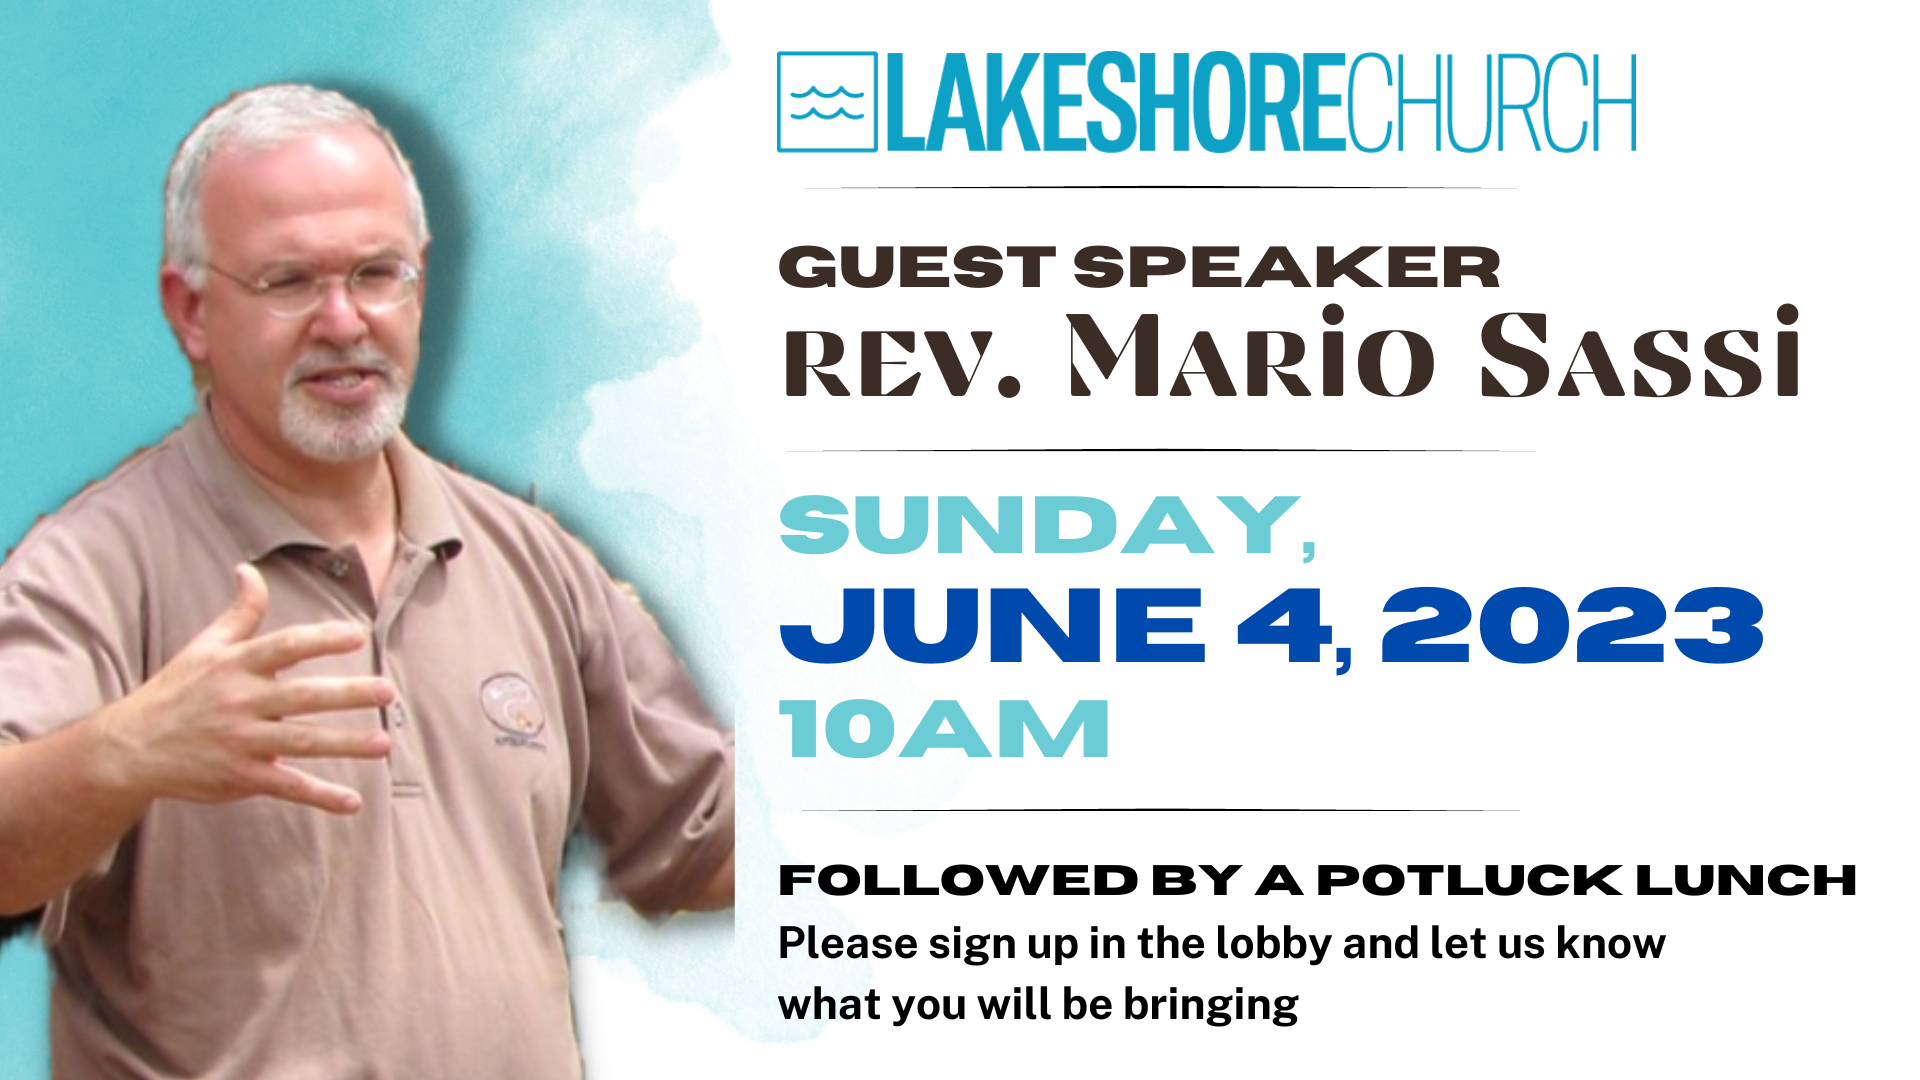 Featured image for “Guest Speaker Rev. Mario Sassi & Potluck”